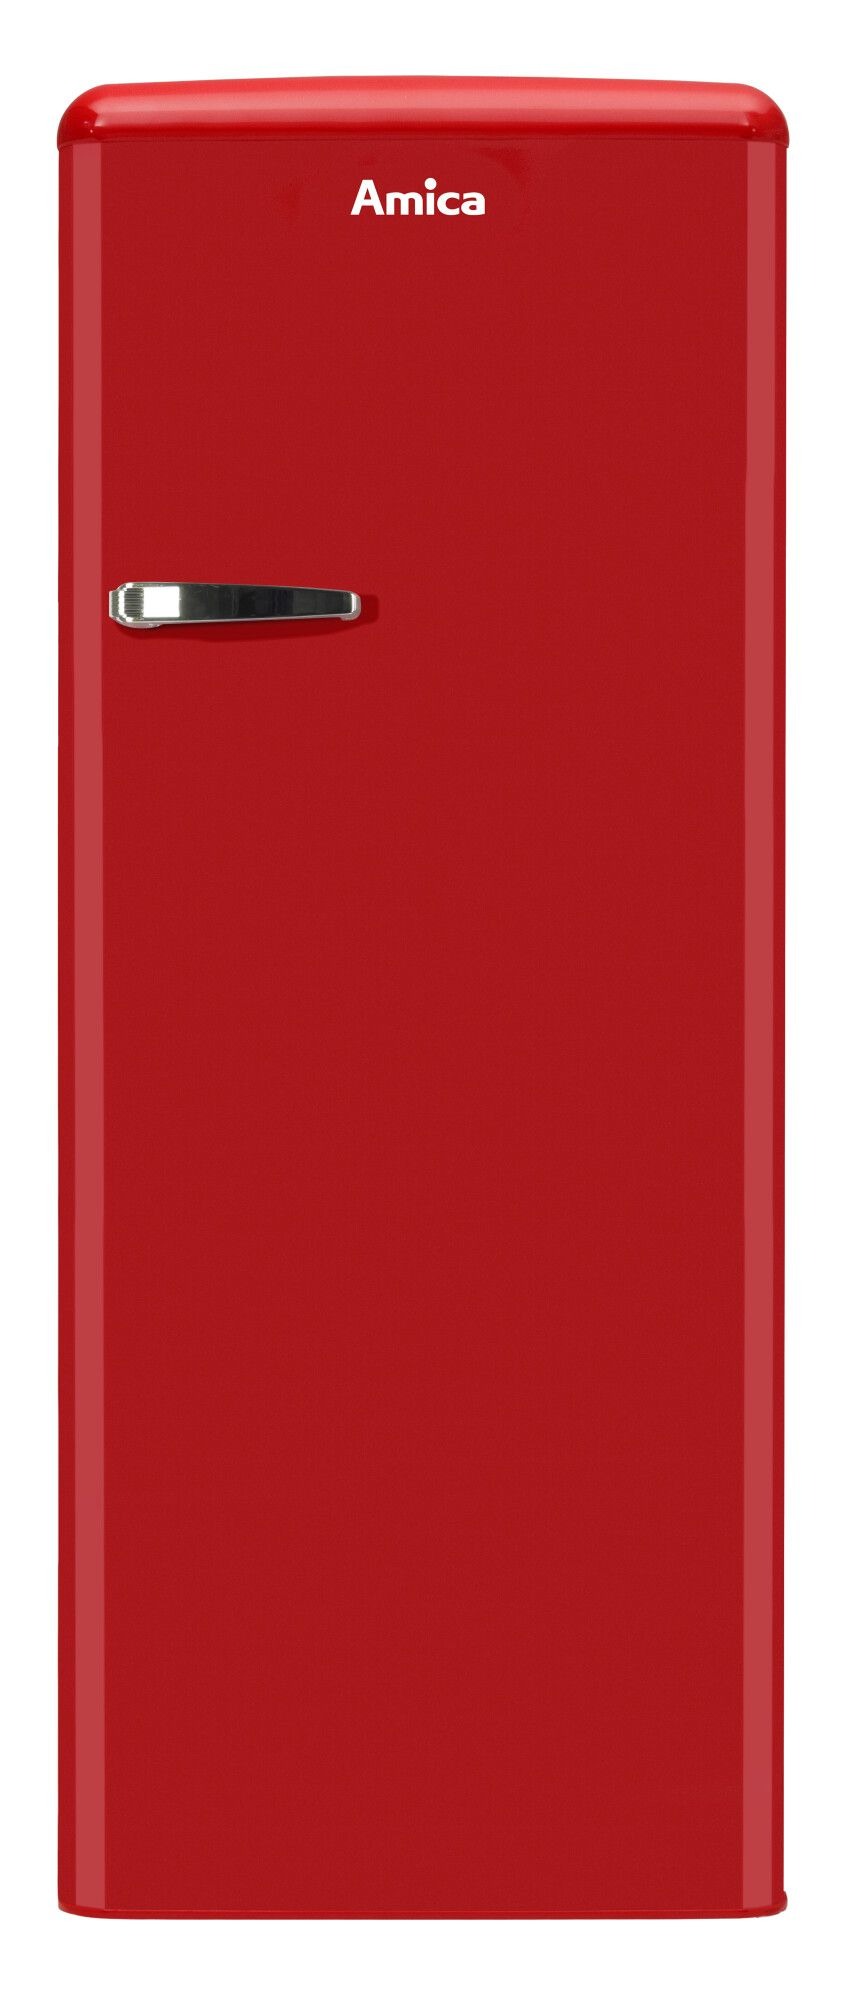 Amica Freistehender Kühlschrank mit Gefrierfach 144 cm Rot KSR364150R